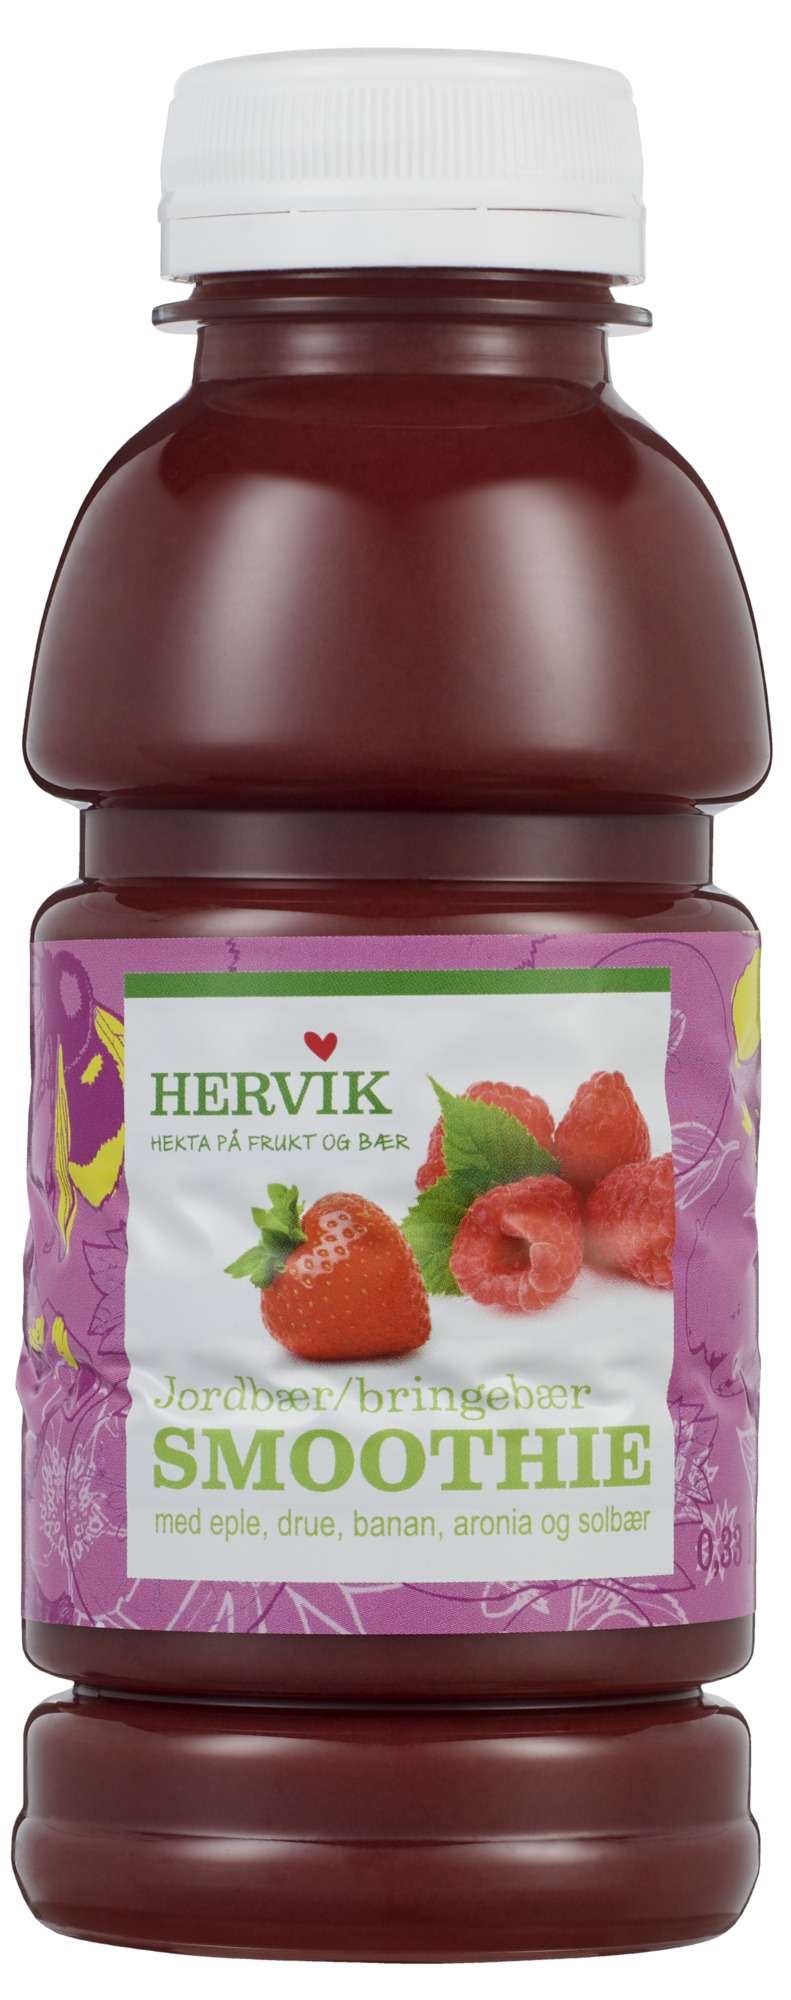 Hervik jordbær/bringebær smoothie 0,33l